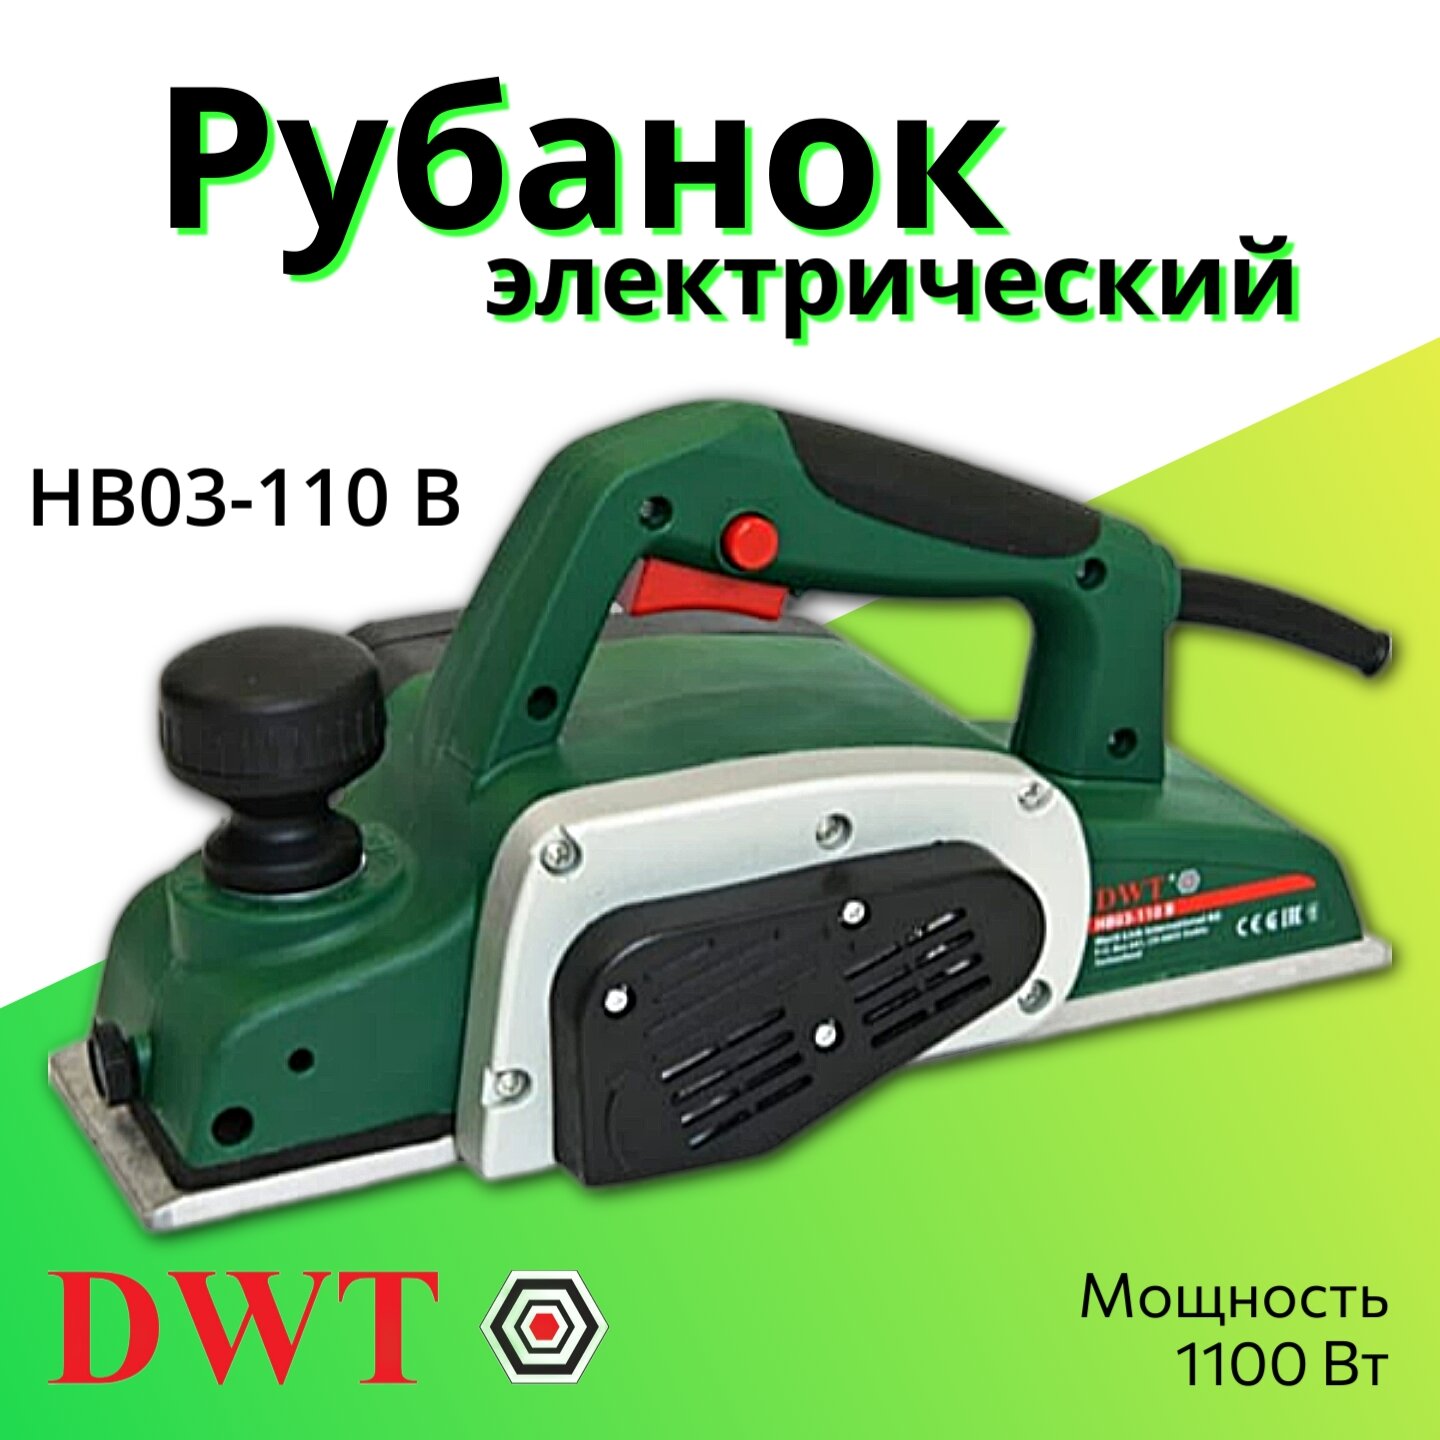 Сетевой электрорубанок DWT HB03-110 B 5.1.16, 1100 Вт зеленый